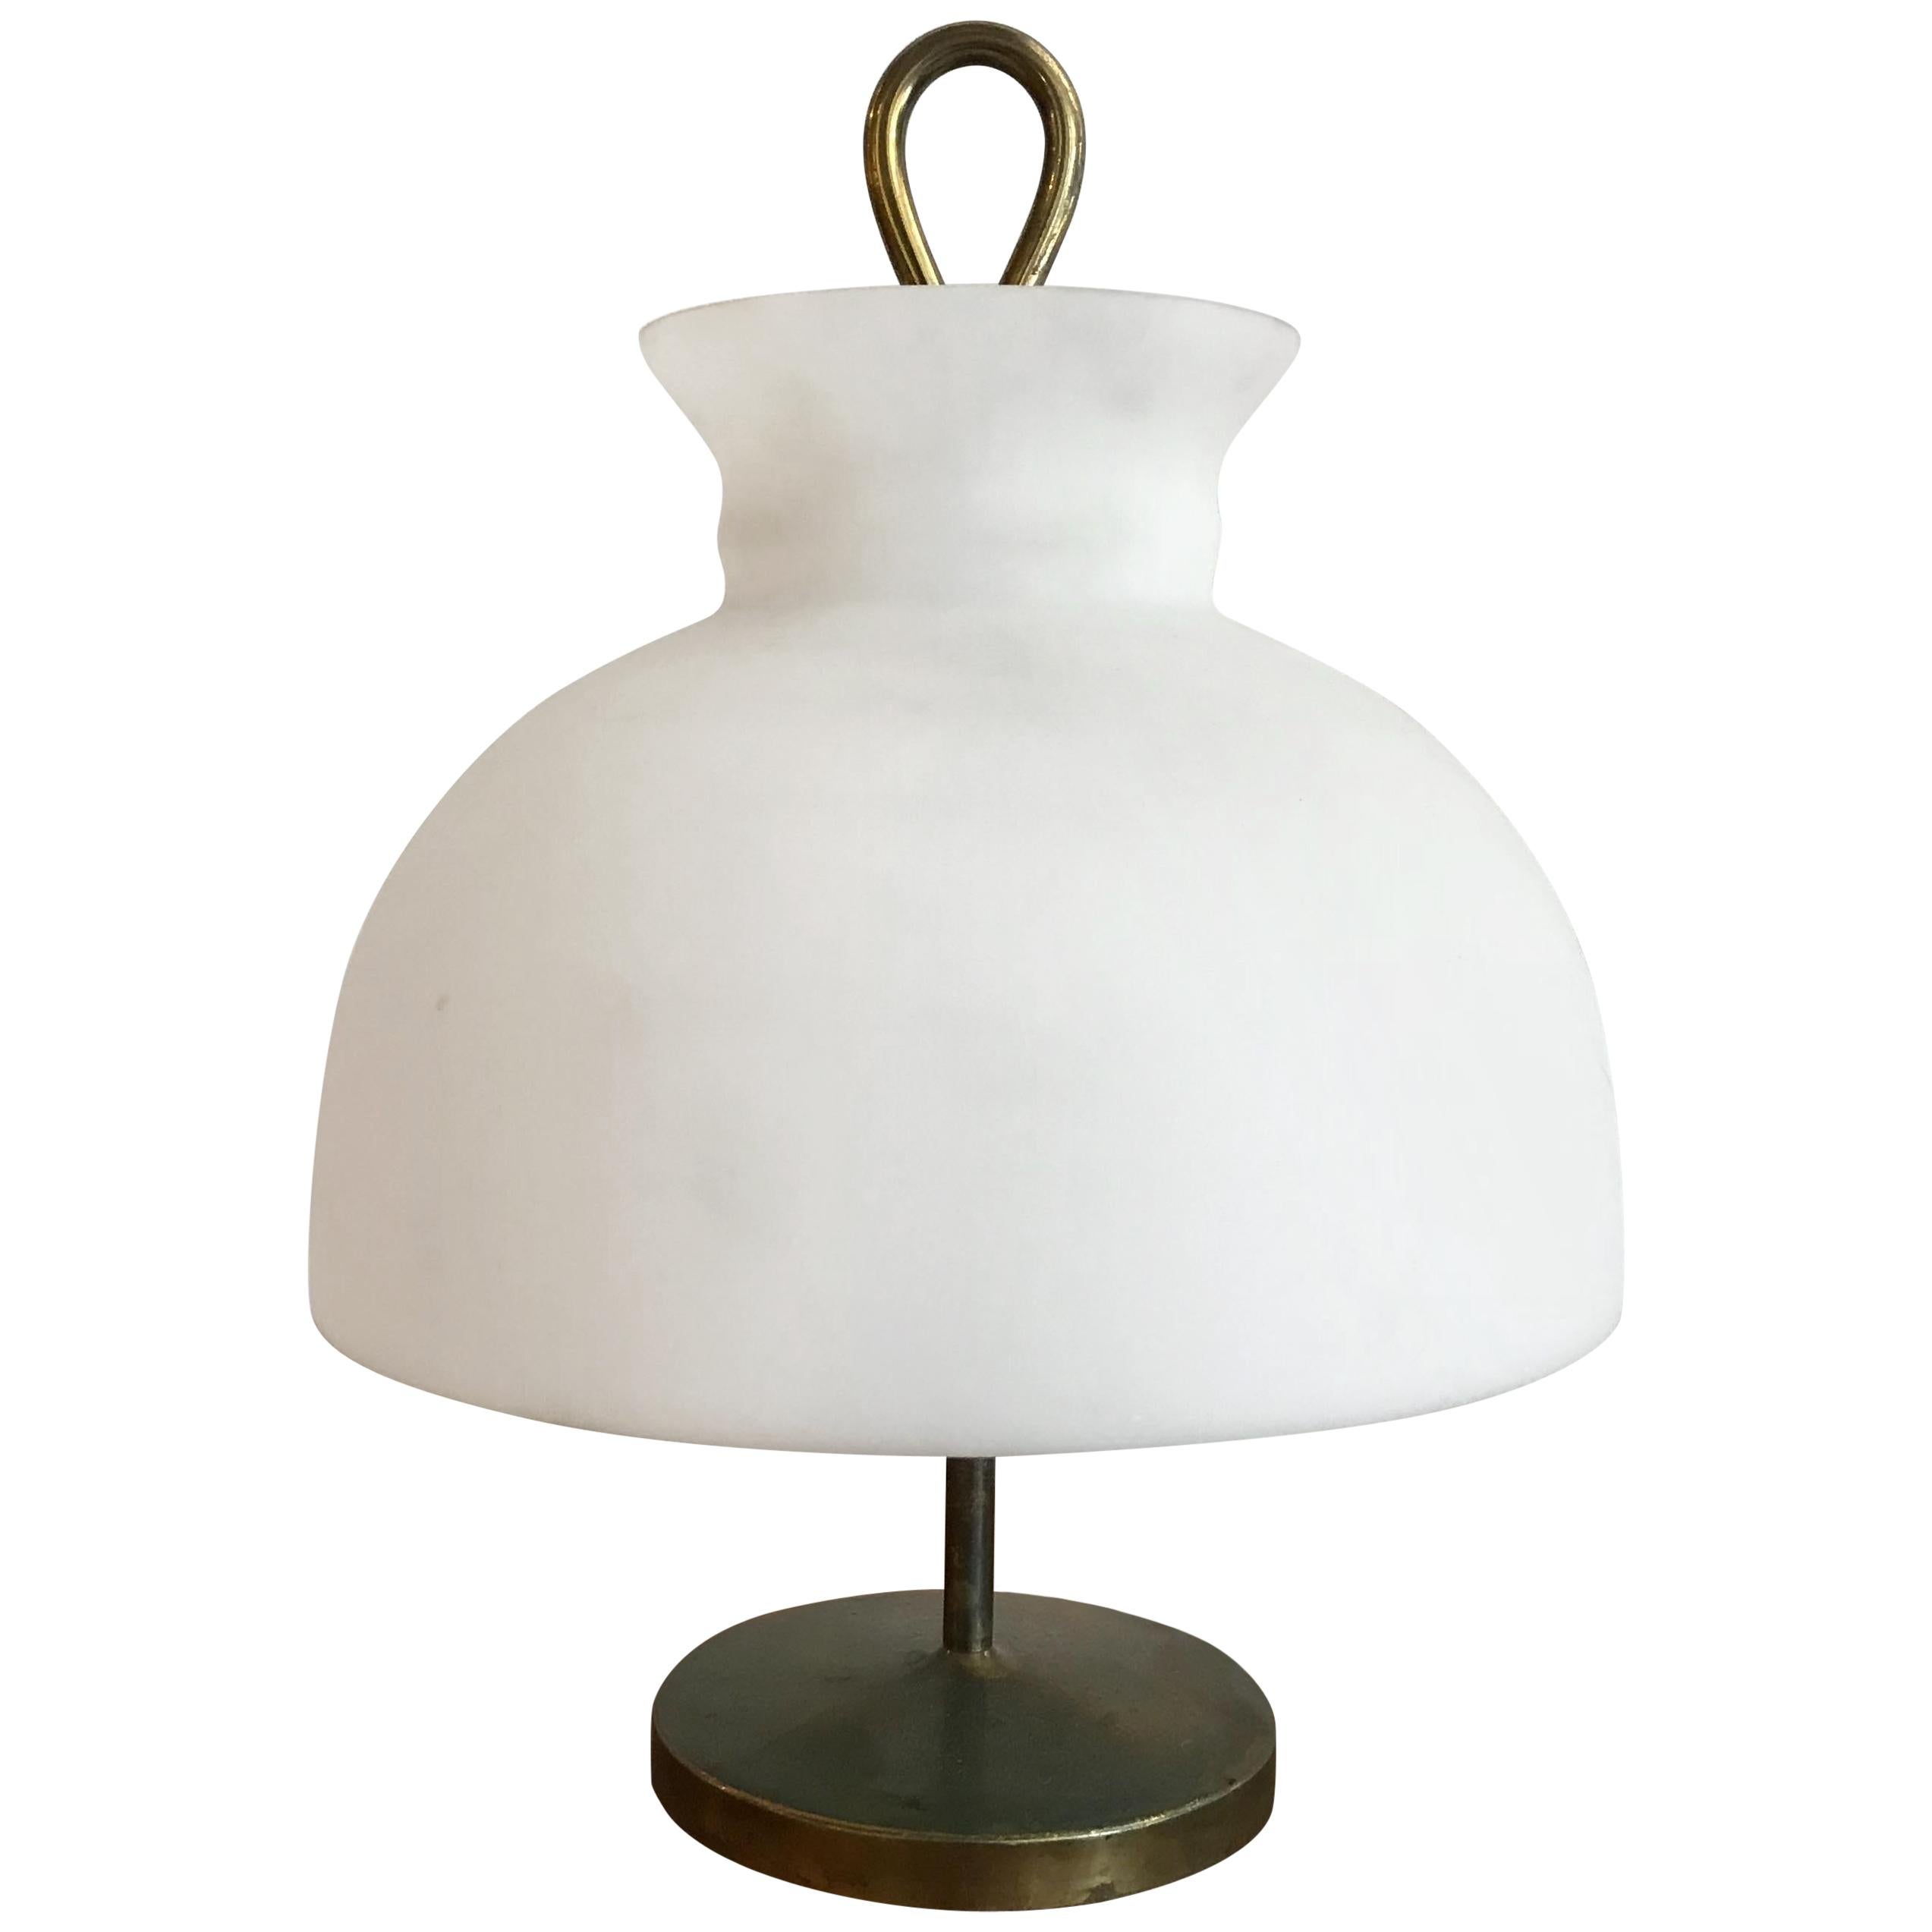 Ignazio Gardella Table Lamp Model Arenzano for Azucena For Sale